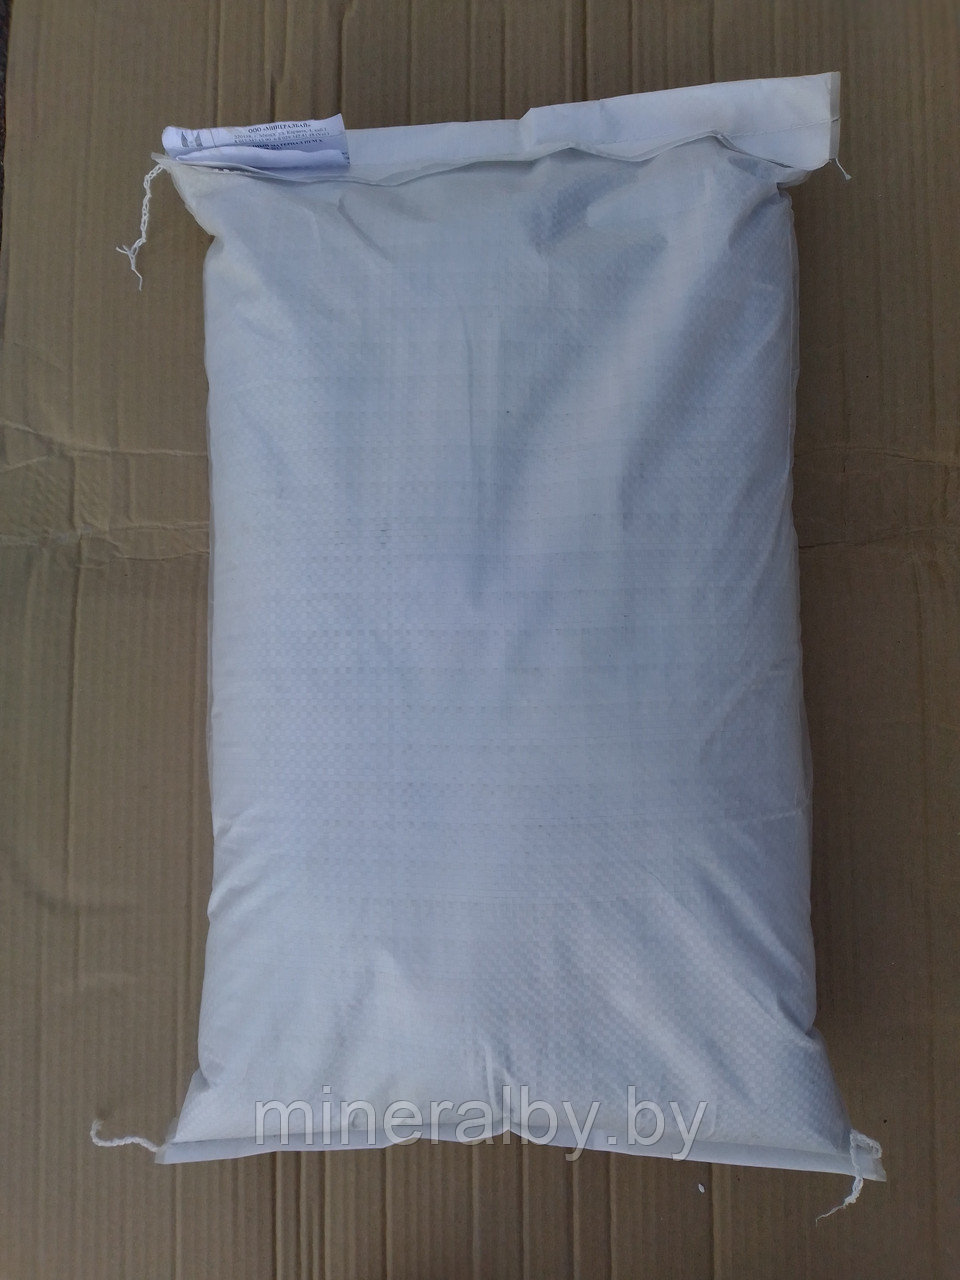 Мешок ламинированный продуктовый 40/70 см под зашивку